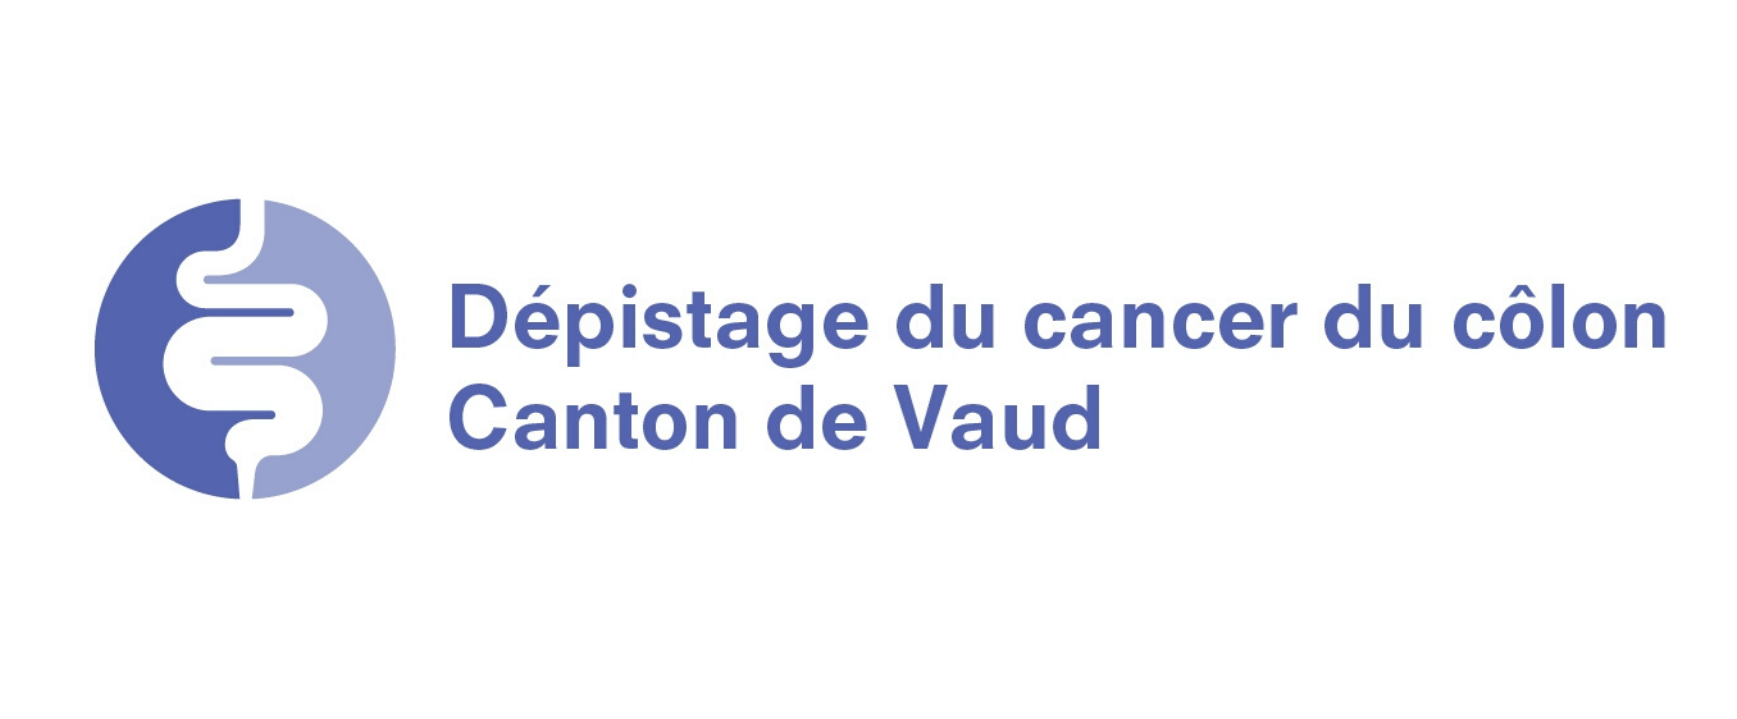 Dépistage du cancer du côlon Canton de Vaud